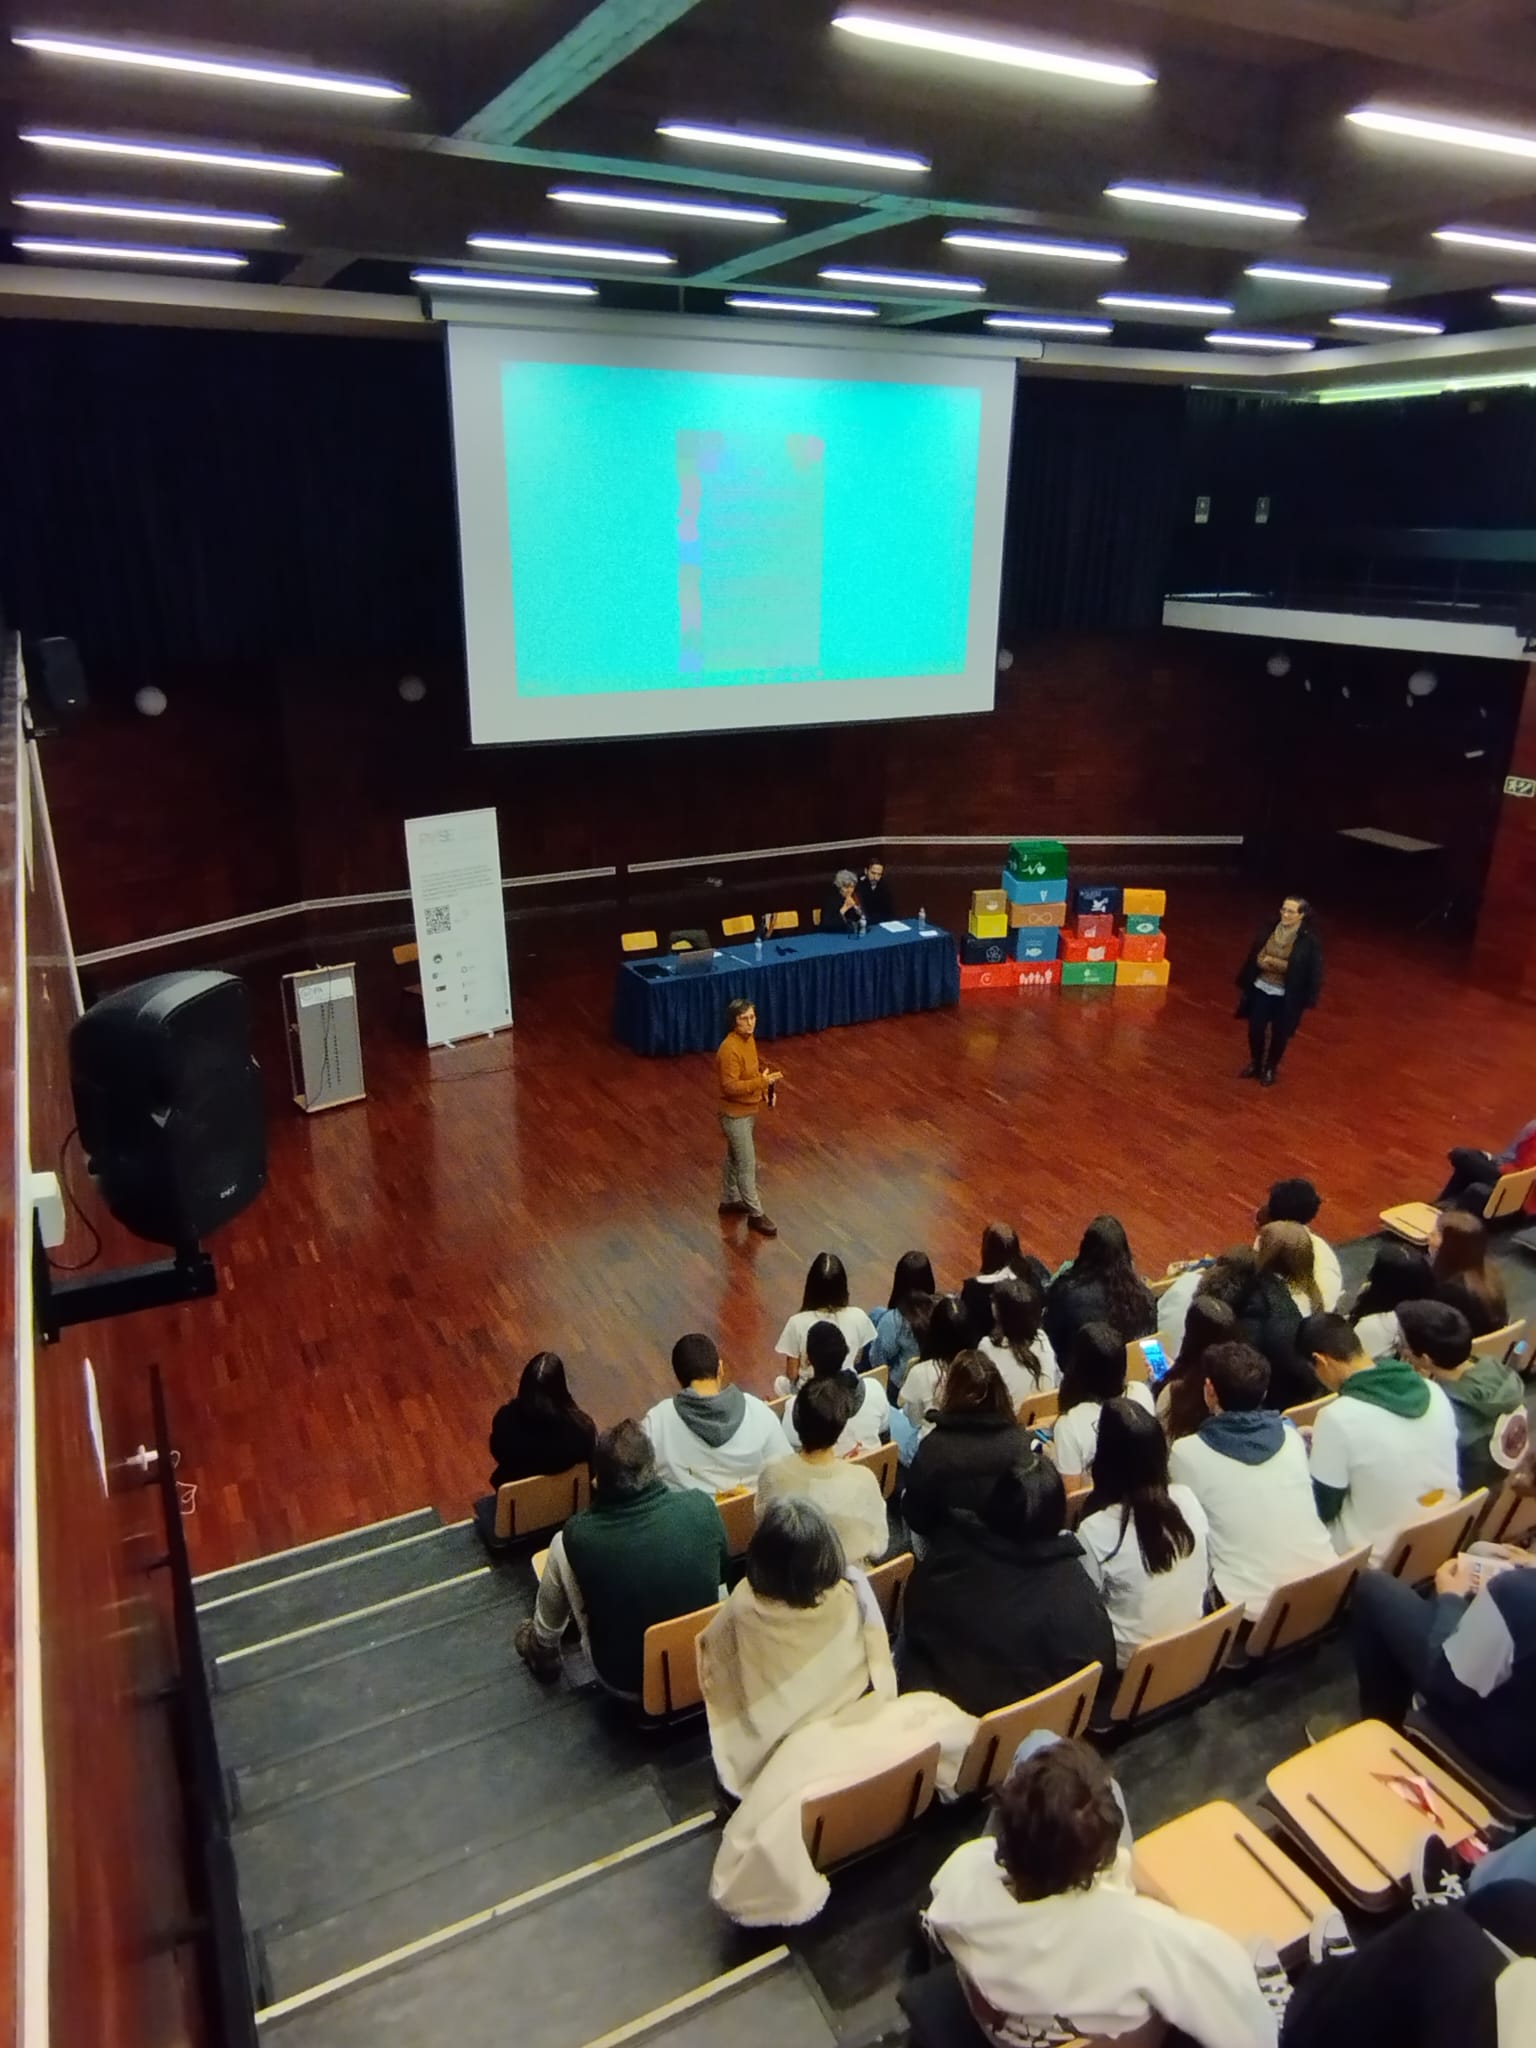 PAFSE first openschooling event @ Escola Secundária Luís de Freitas Branco